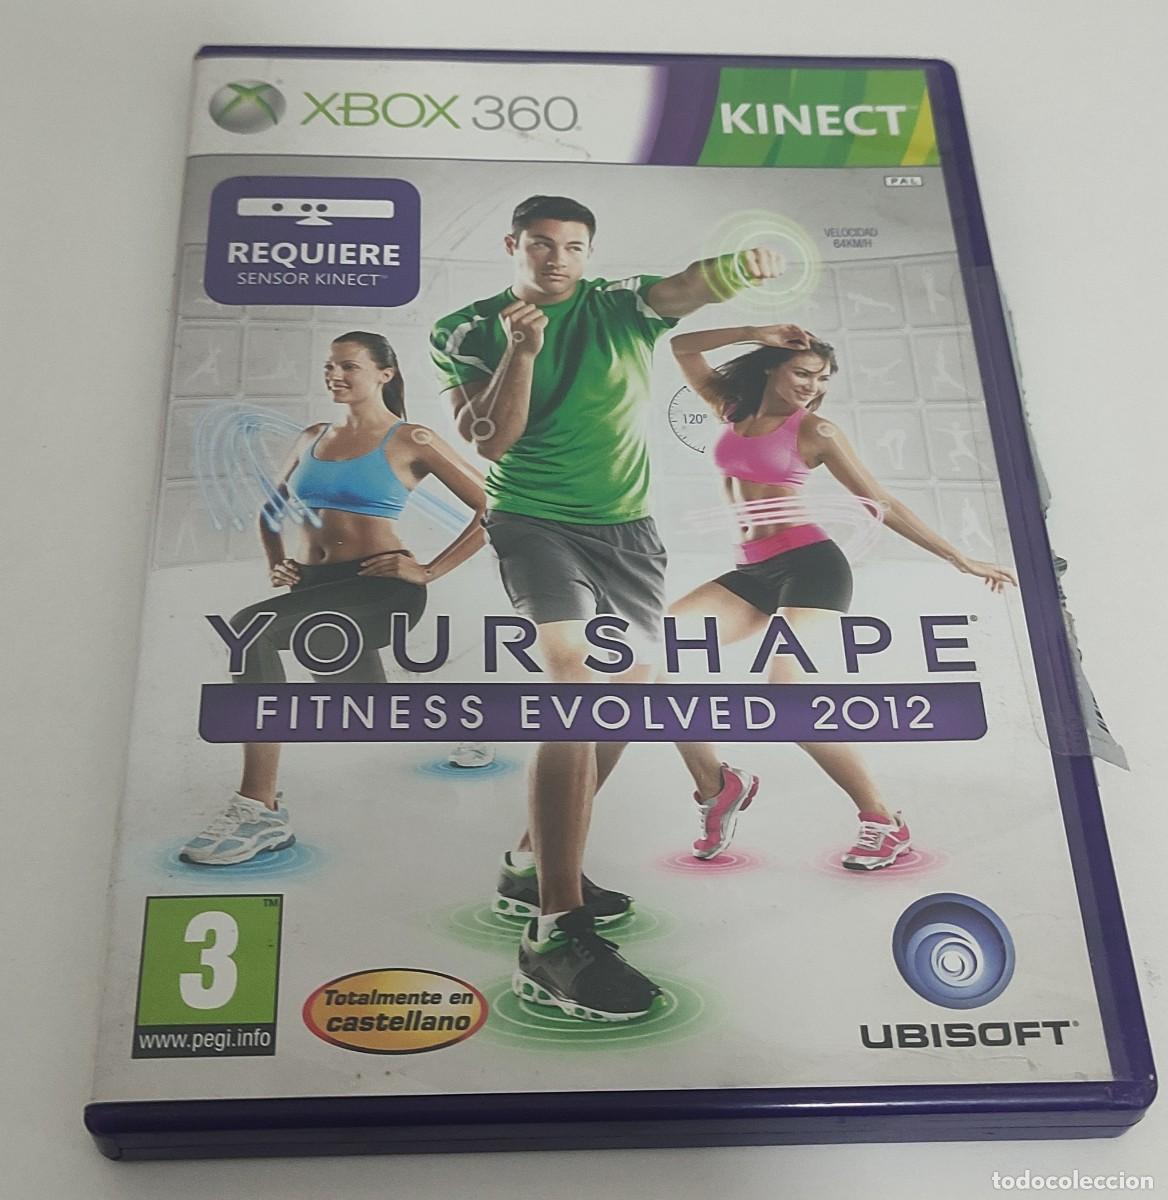 Kinect - Your Shape: Fitness Evolved (Pt - Br) 